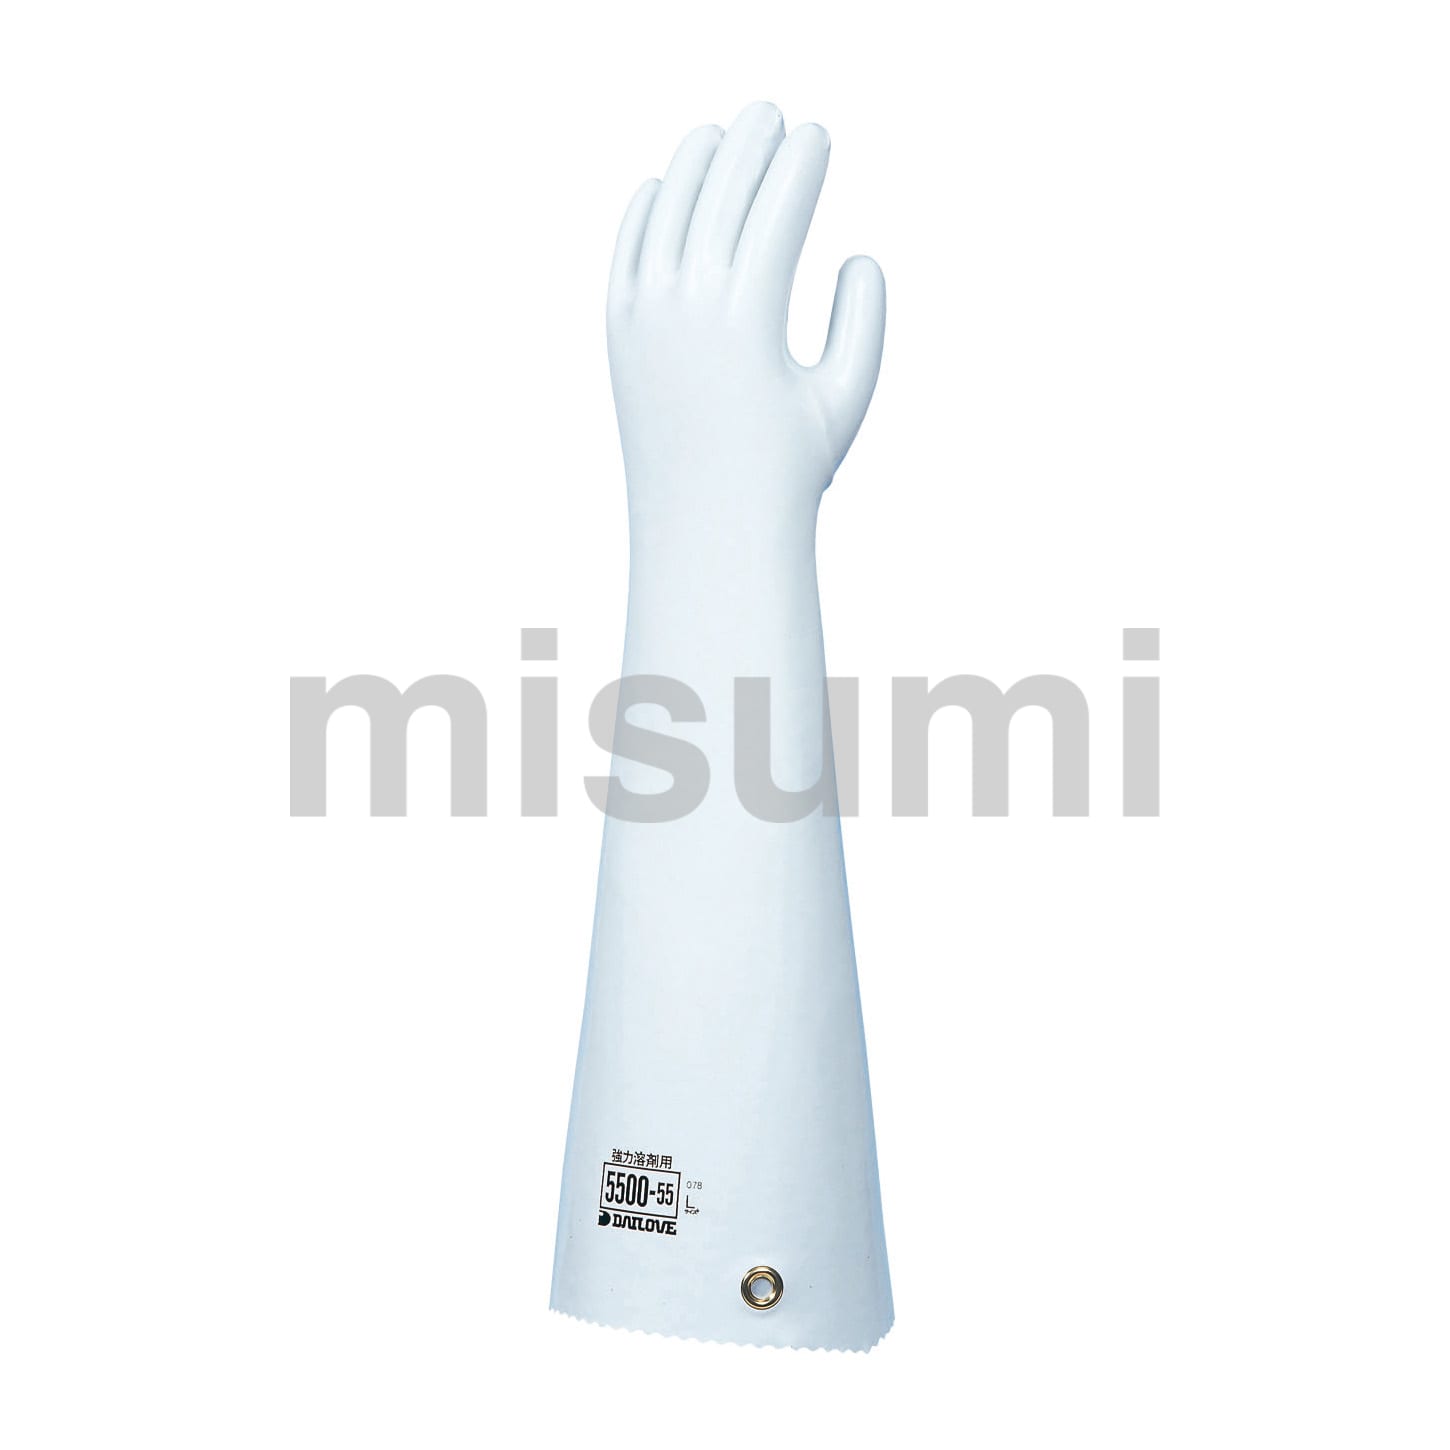 化学防護手袋（ブチルゴム）【アズワン】 アズワン MISUMI(ミスミ)